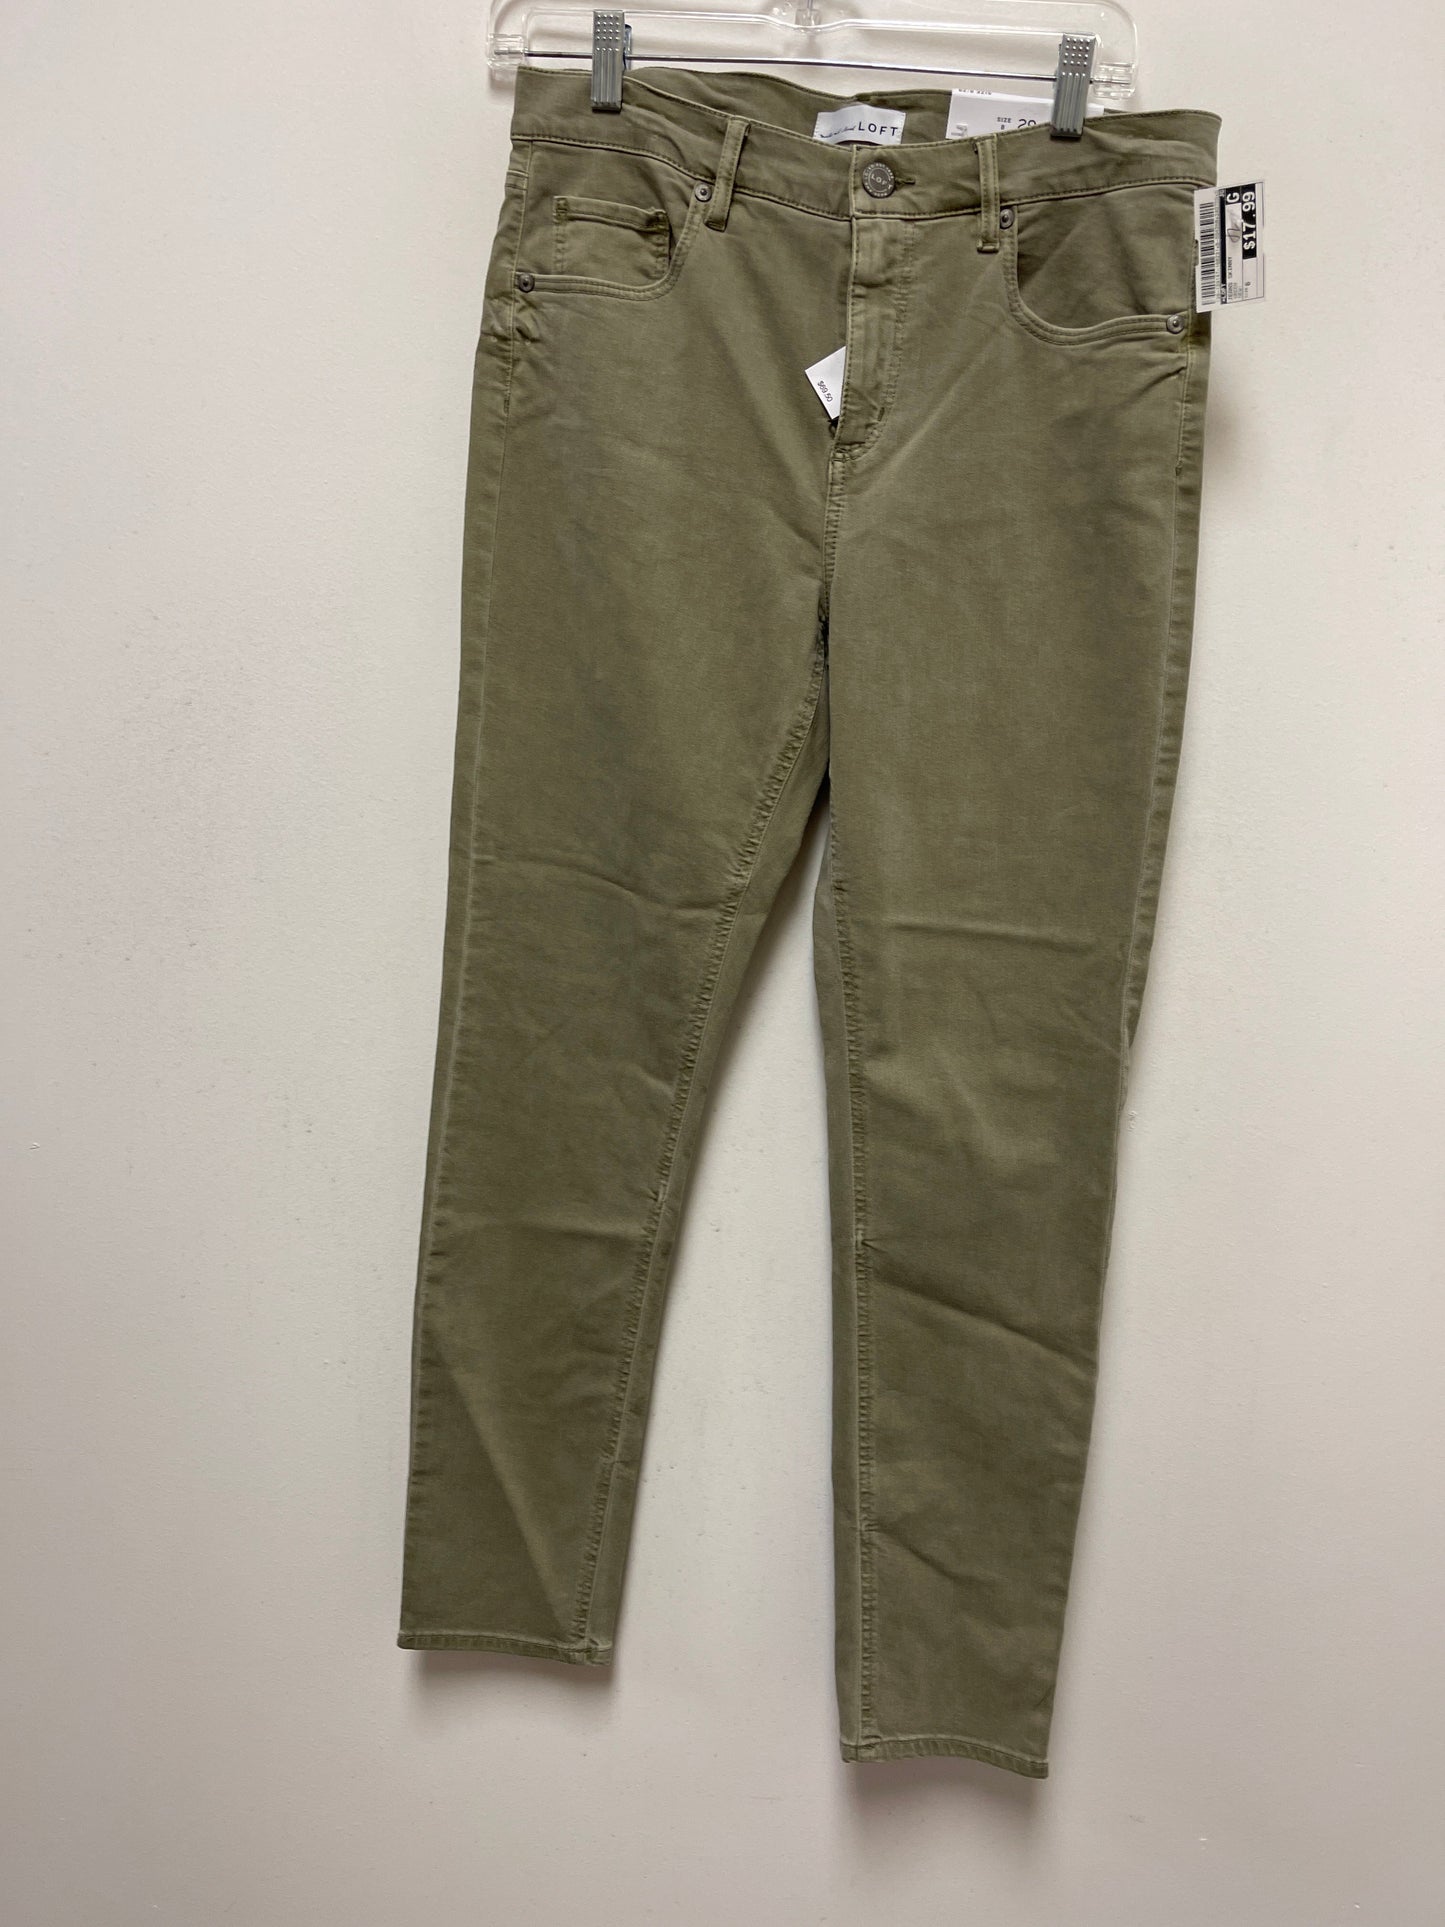 Green Jeans Skinny Loft, Size 6